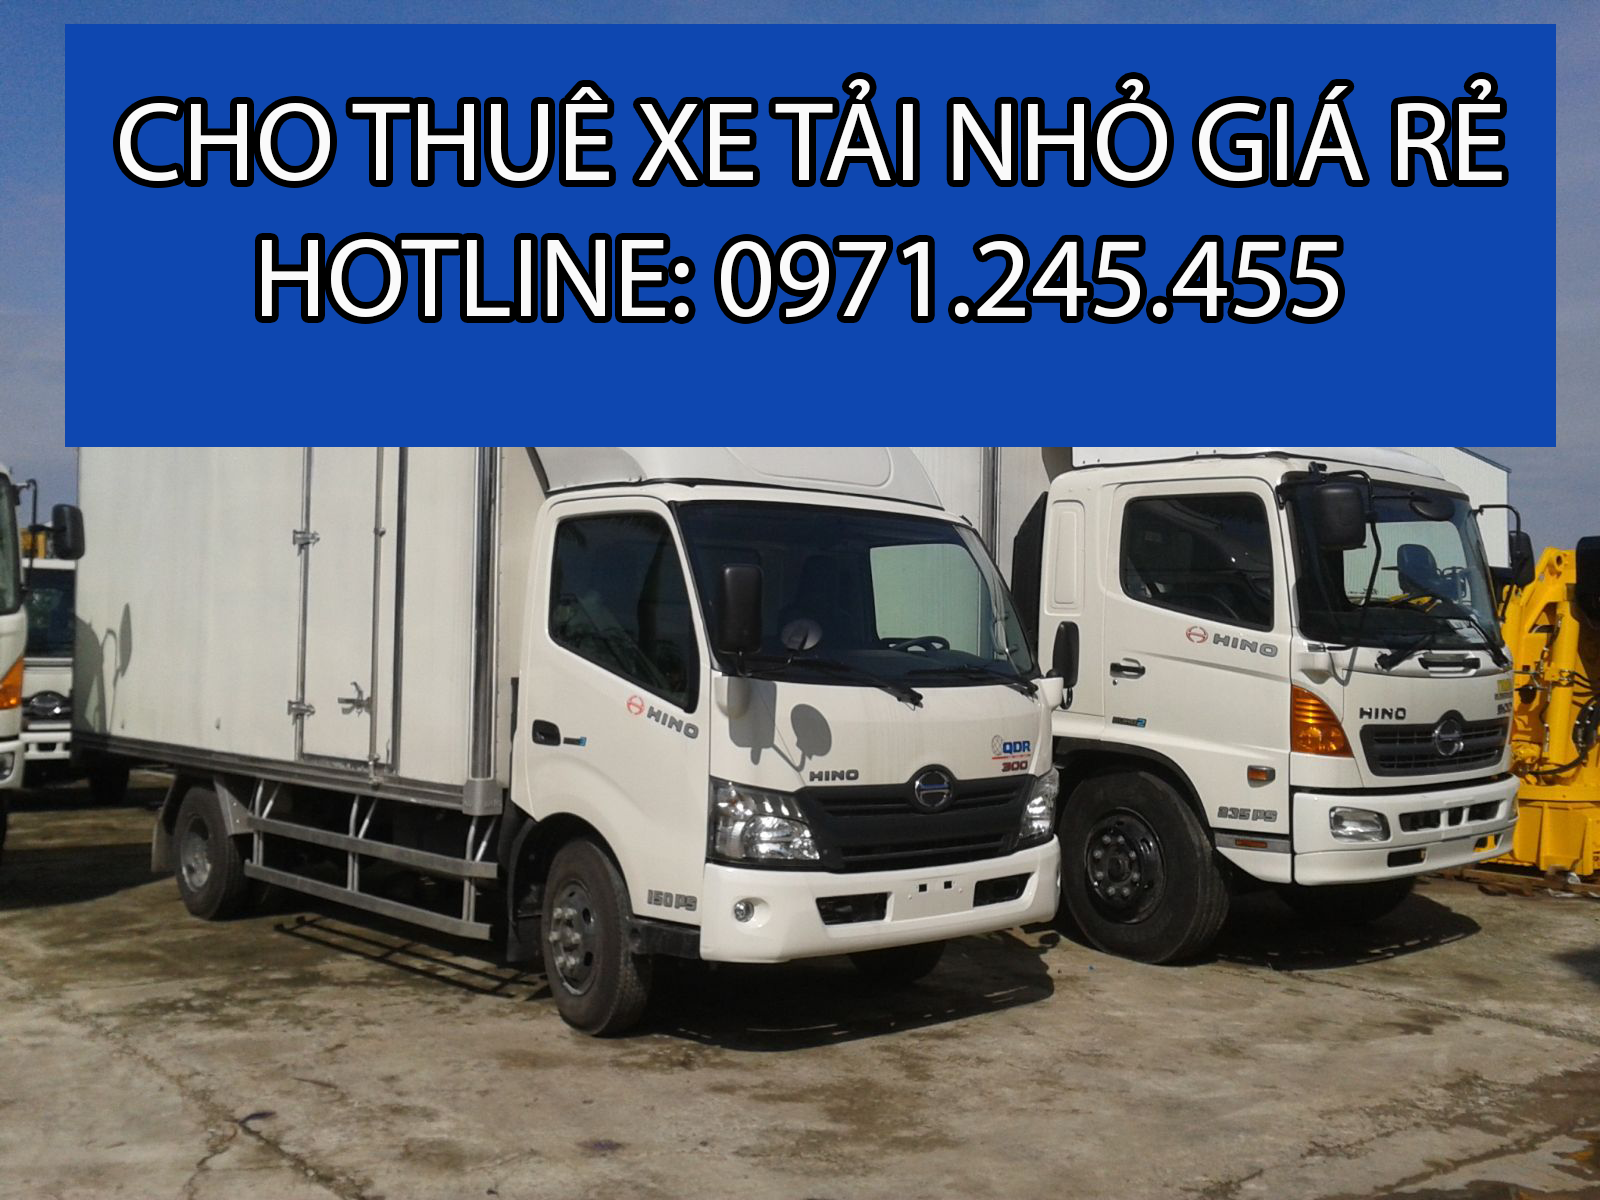 Cho thuê xe tải chở hàng tại TPHCM – Đường Việt Sài Gòn